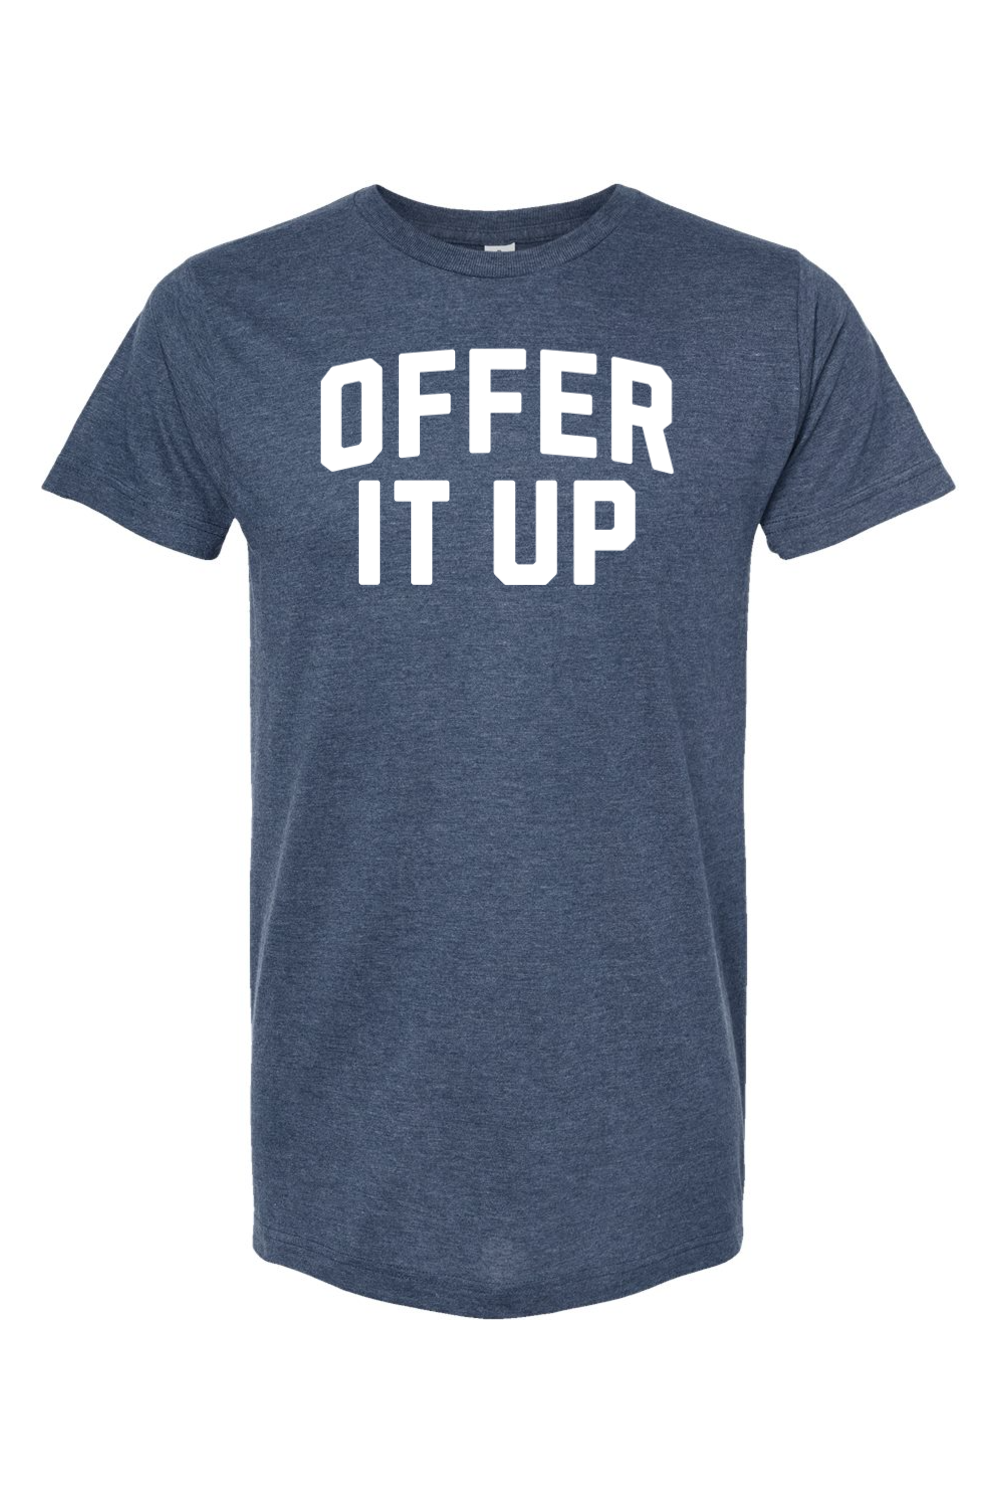 Offer It Up - T-Shirt